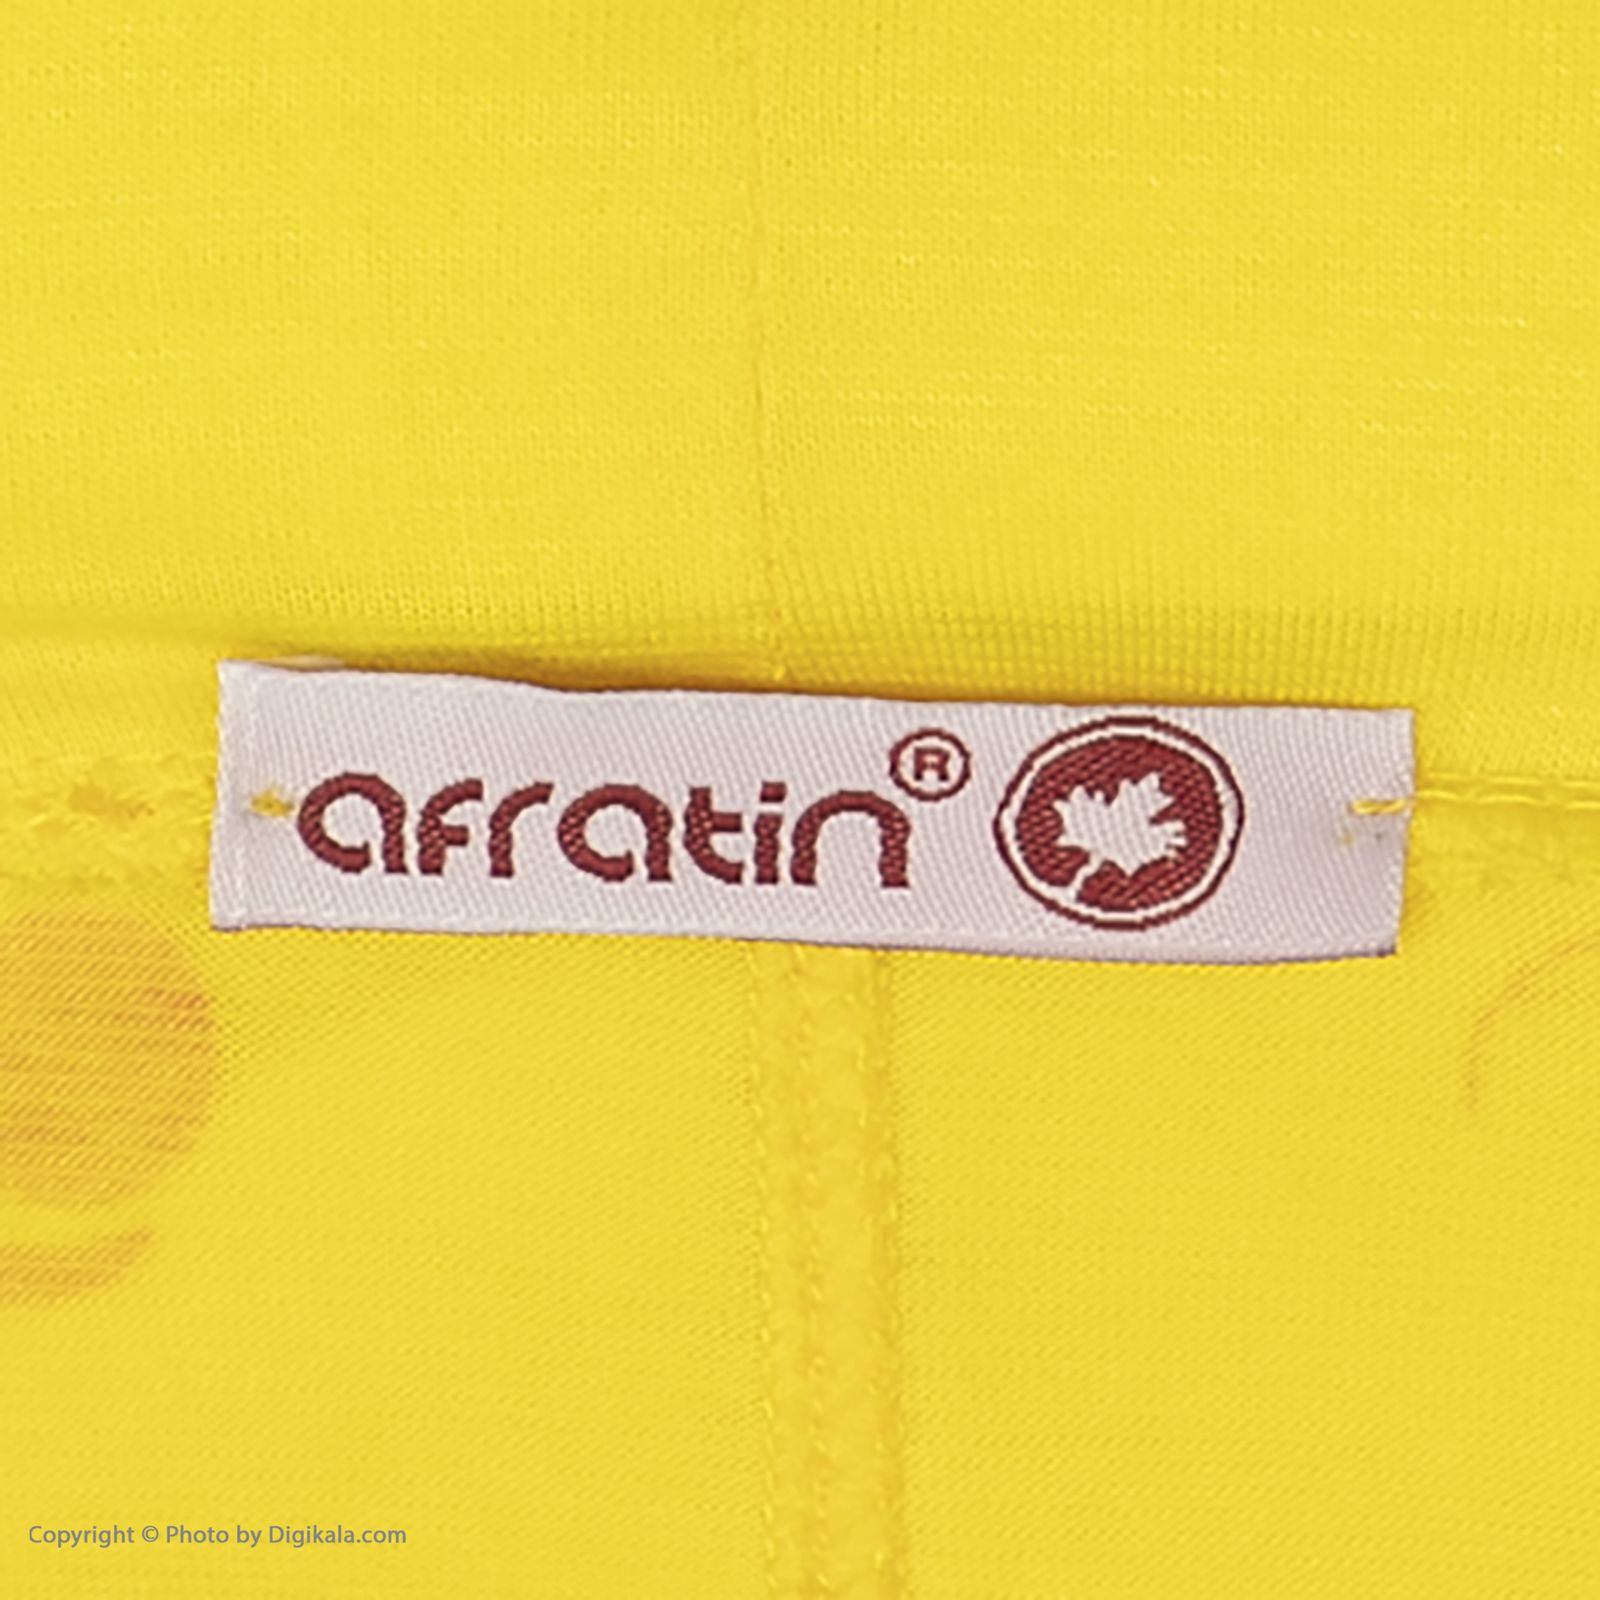 ست تی شرت و شلوارک زنانه افراتین مدل آلبالو کد 6557 رنگ زرد -  - 10